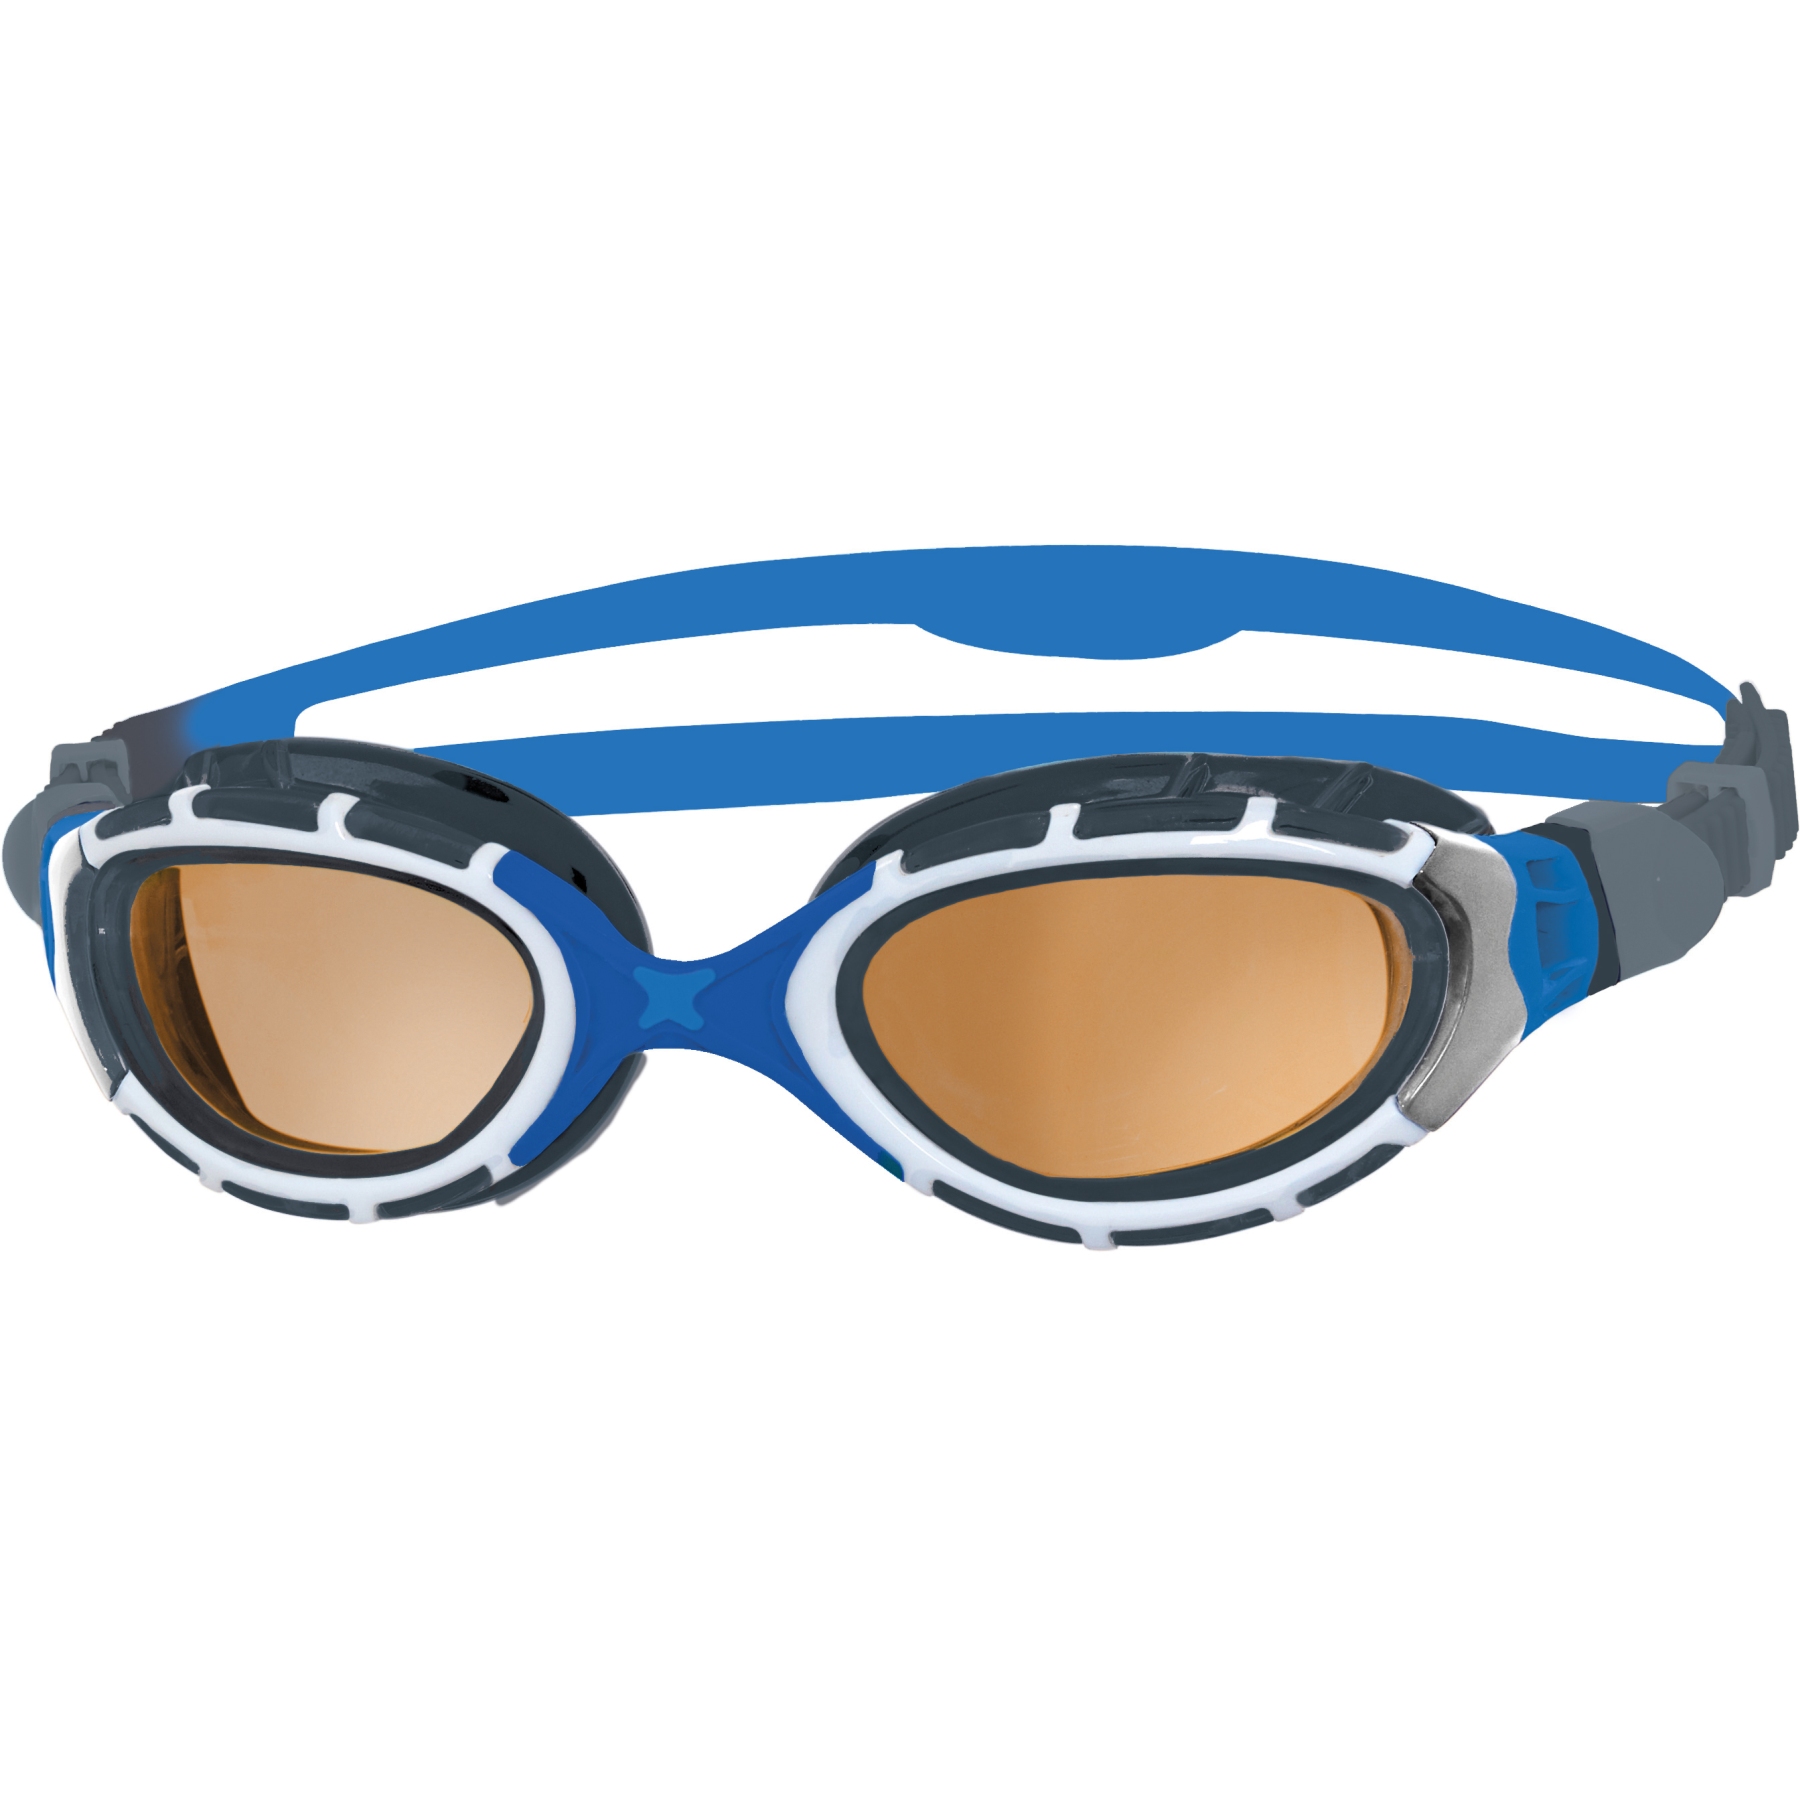 Produktbild von Zoggs Predator Flex Schwimmbrille - Polarized Ultra Copper Gläser - Regular Fit - Blau/Grau